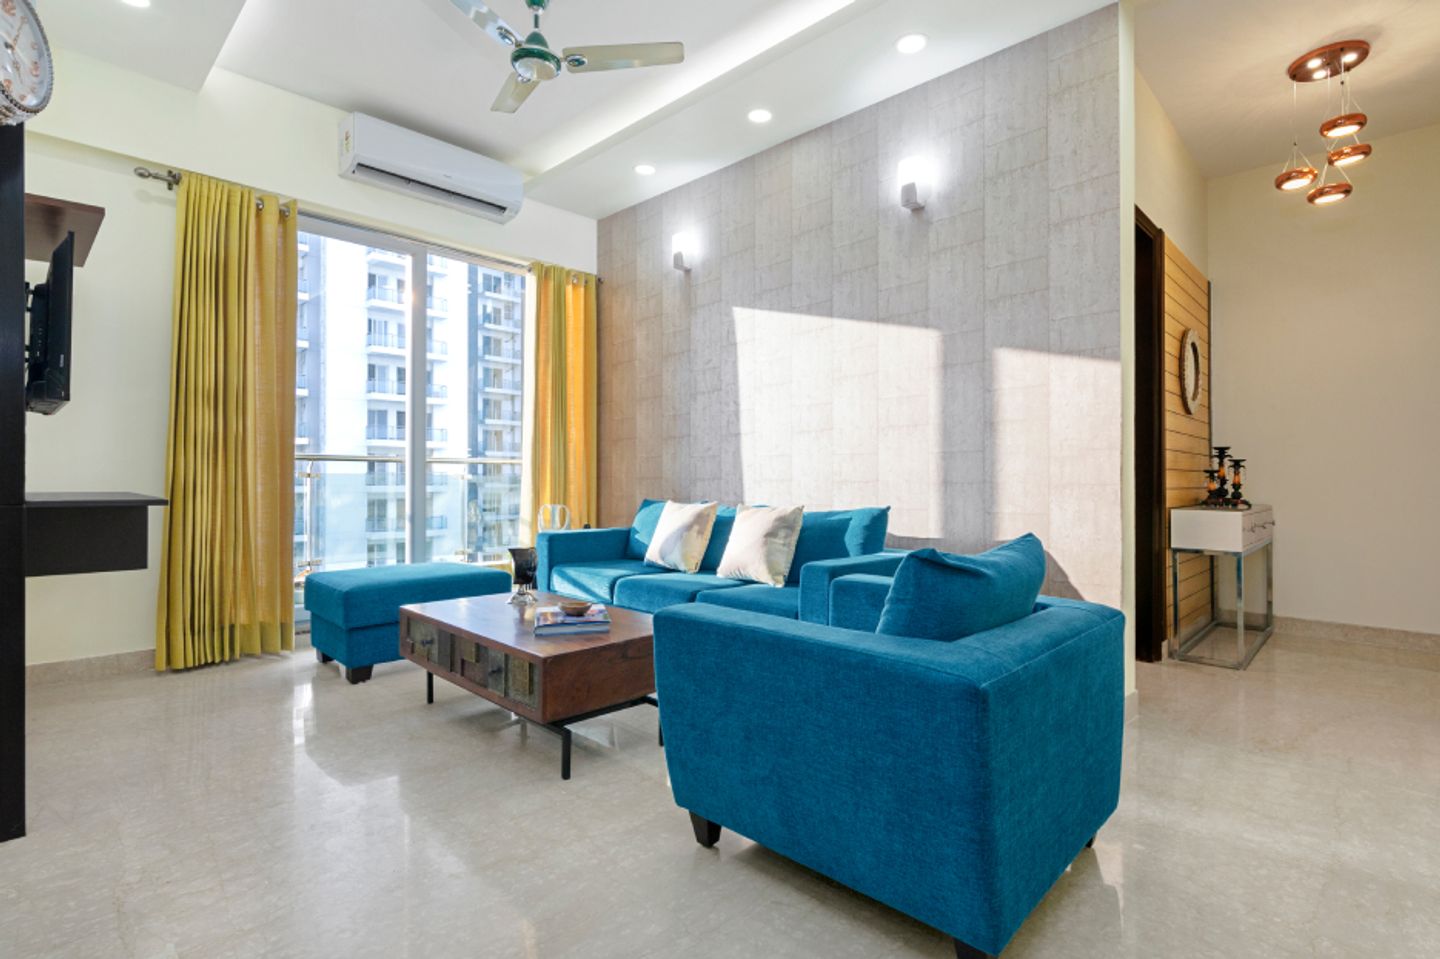 Glossy Flooring Tiles For Living Rooms - Livspace